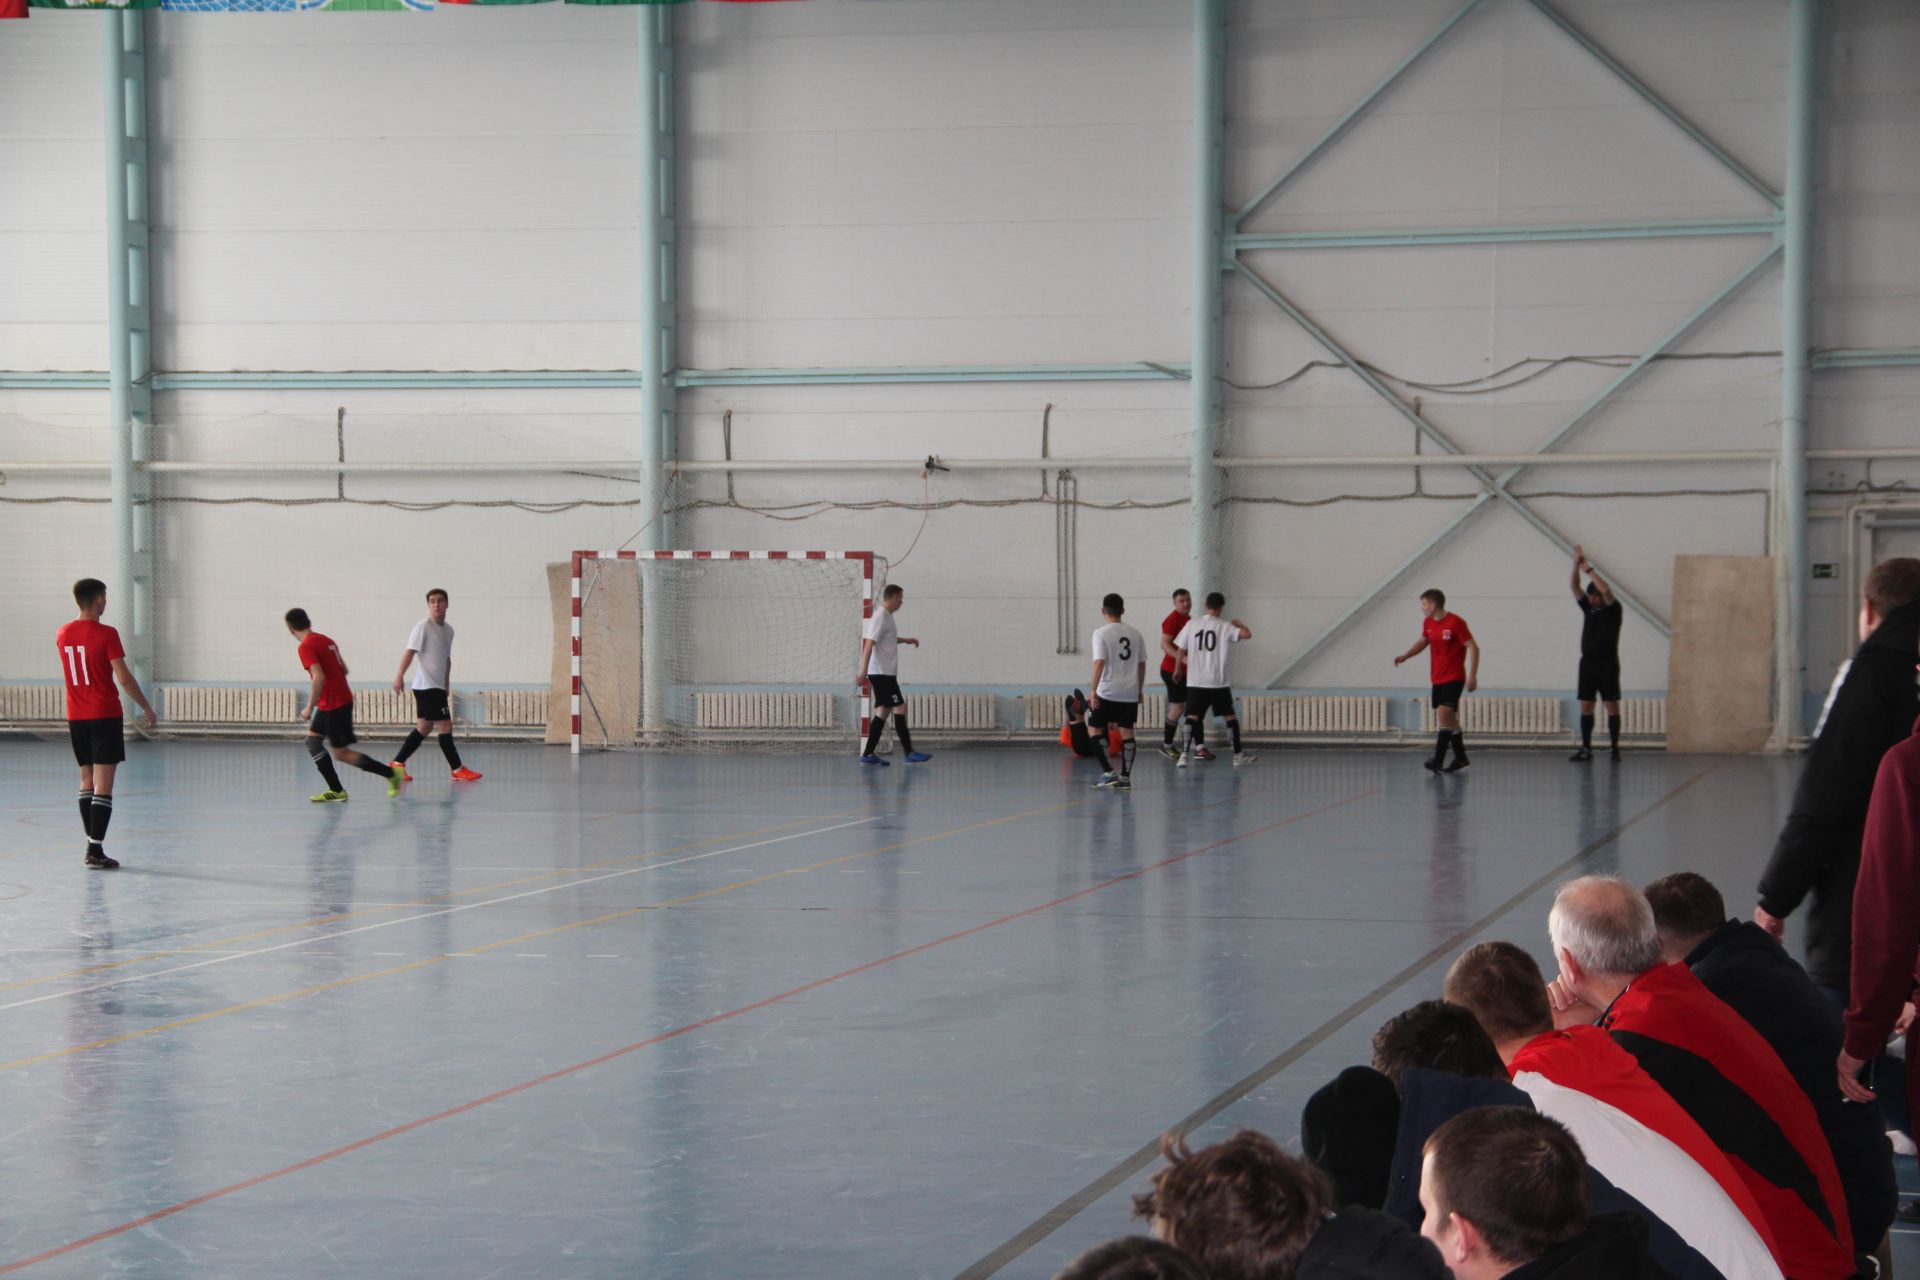 В Болгаре прошел турнир по мини-футболу среди малых городов и сельских районов республики (ФОТО)